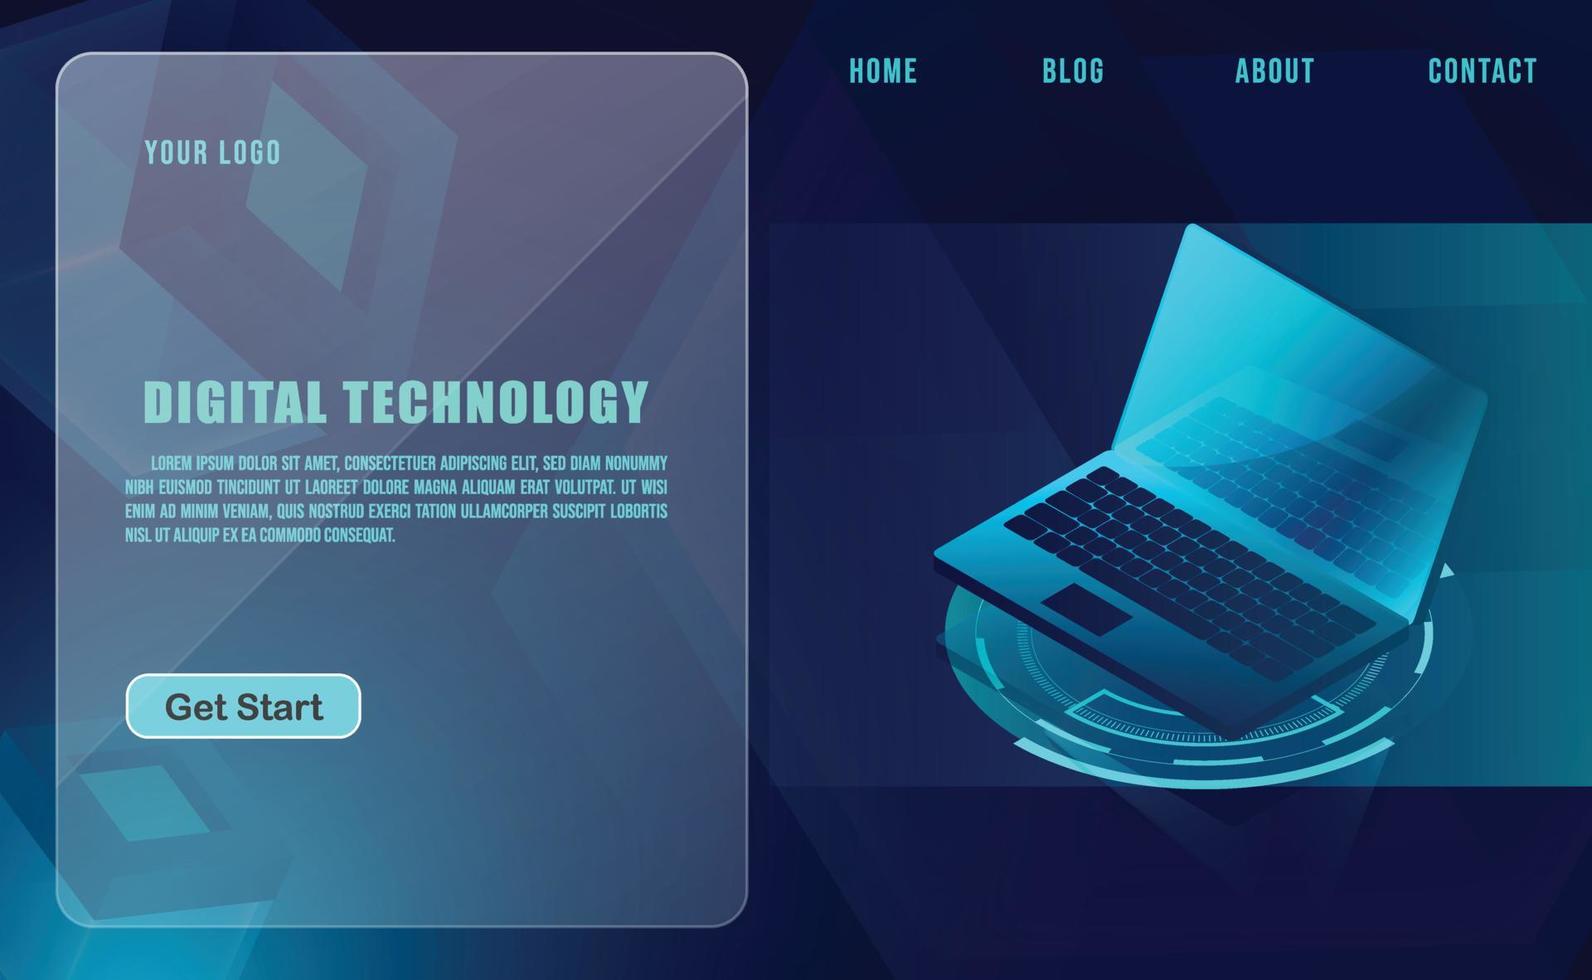 concetto di tecnologia per modello di banner web o brochure, colore blu. vettore